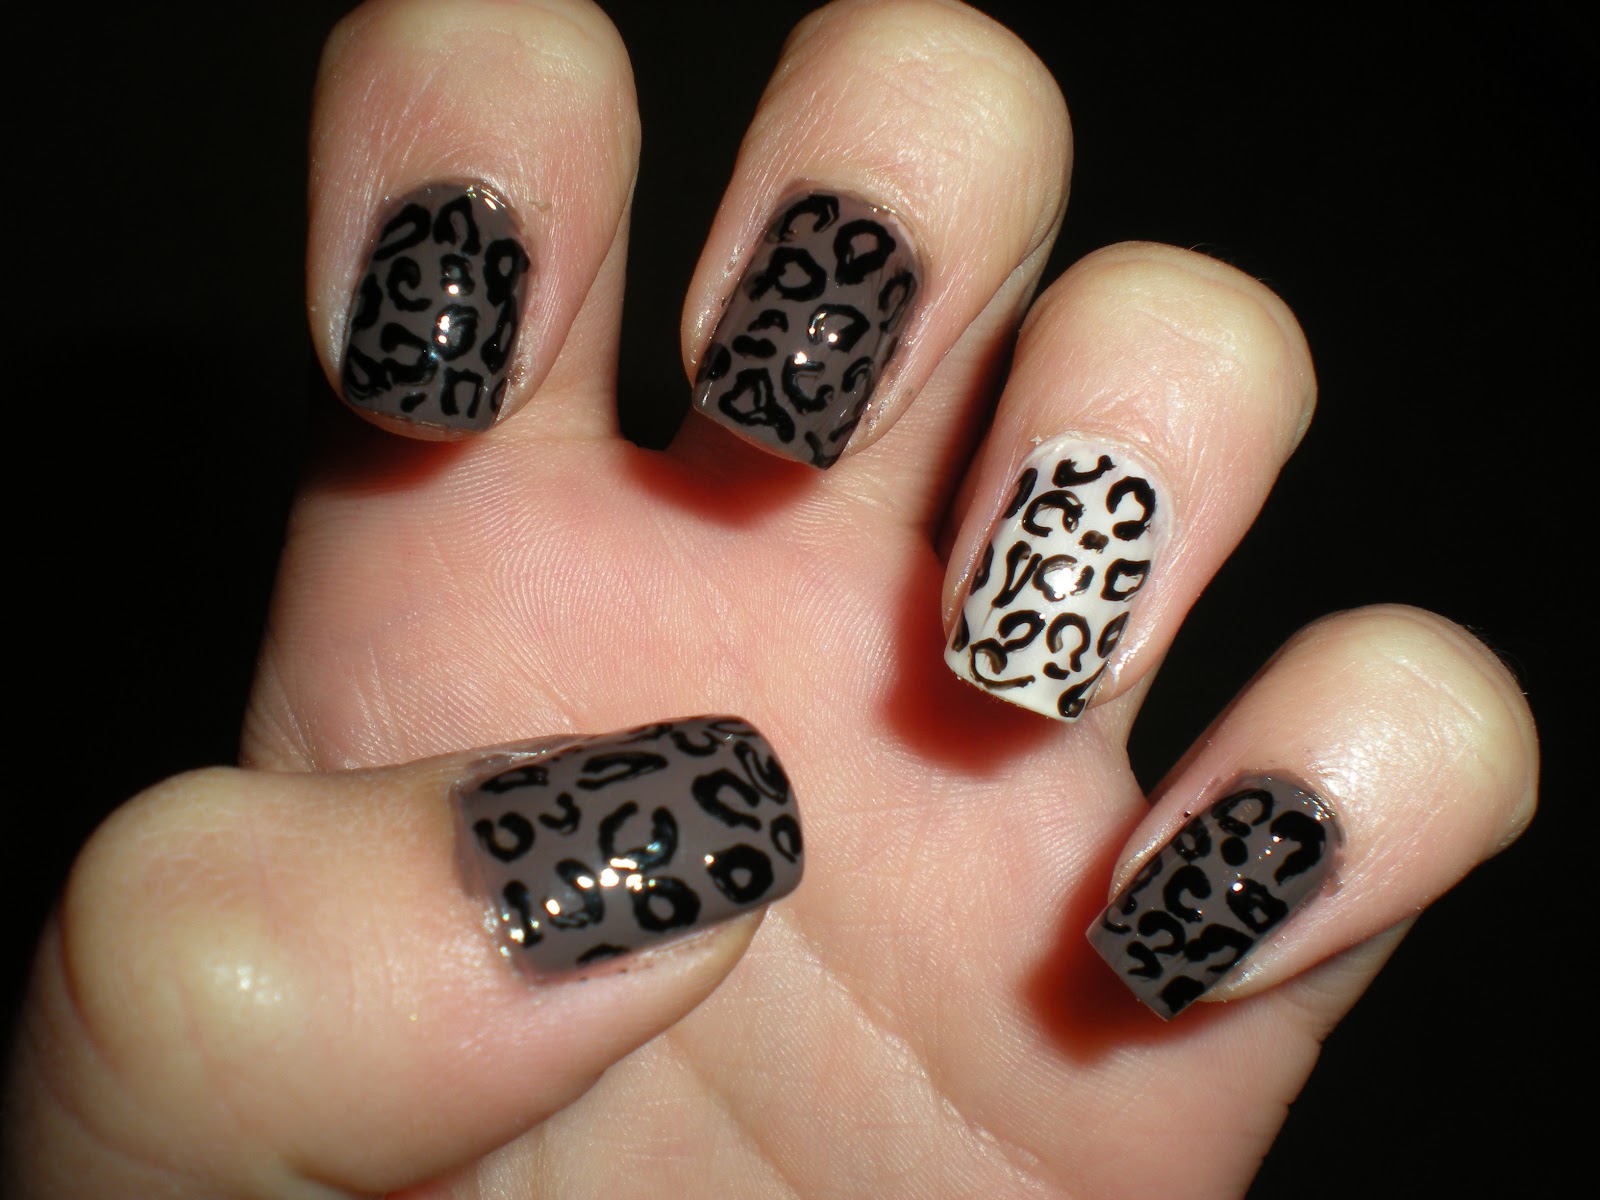 9. Cheetah Print Nail Designs for Long Nails - wide 5